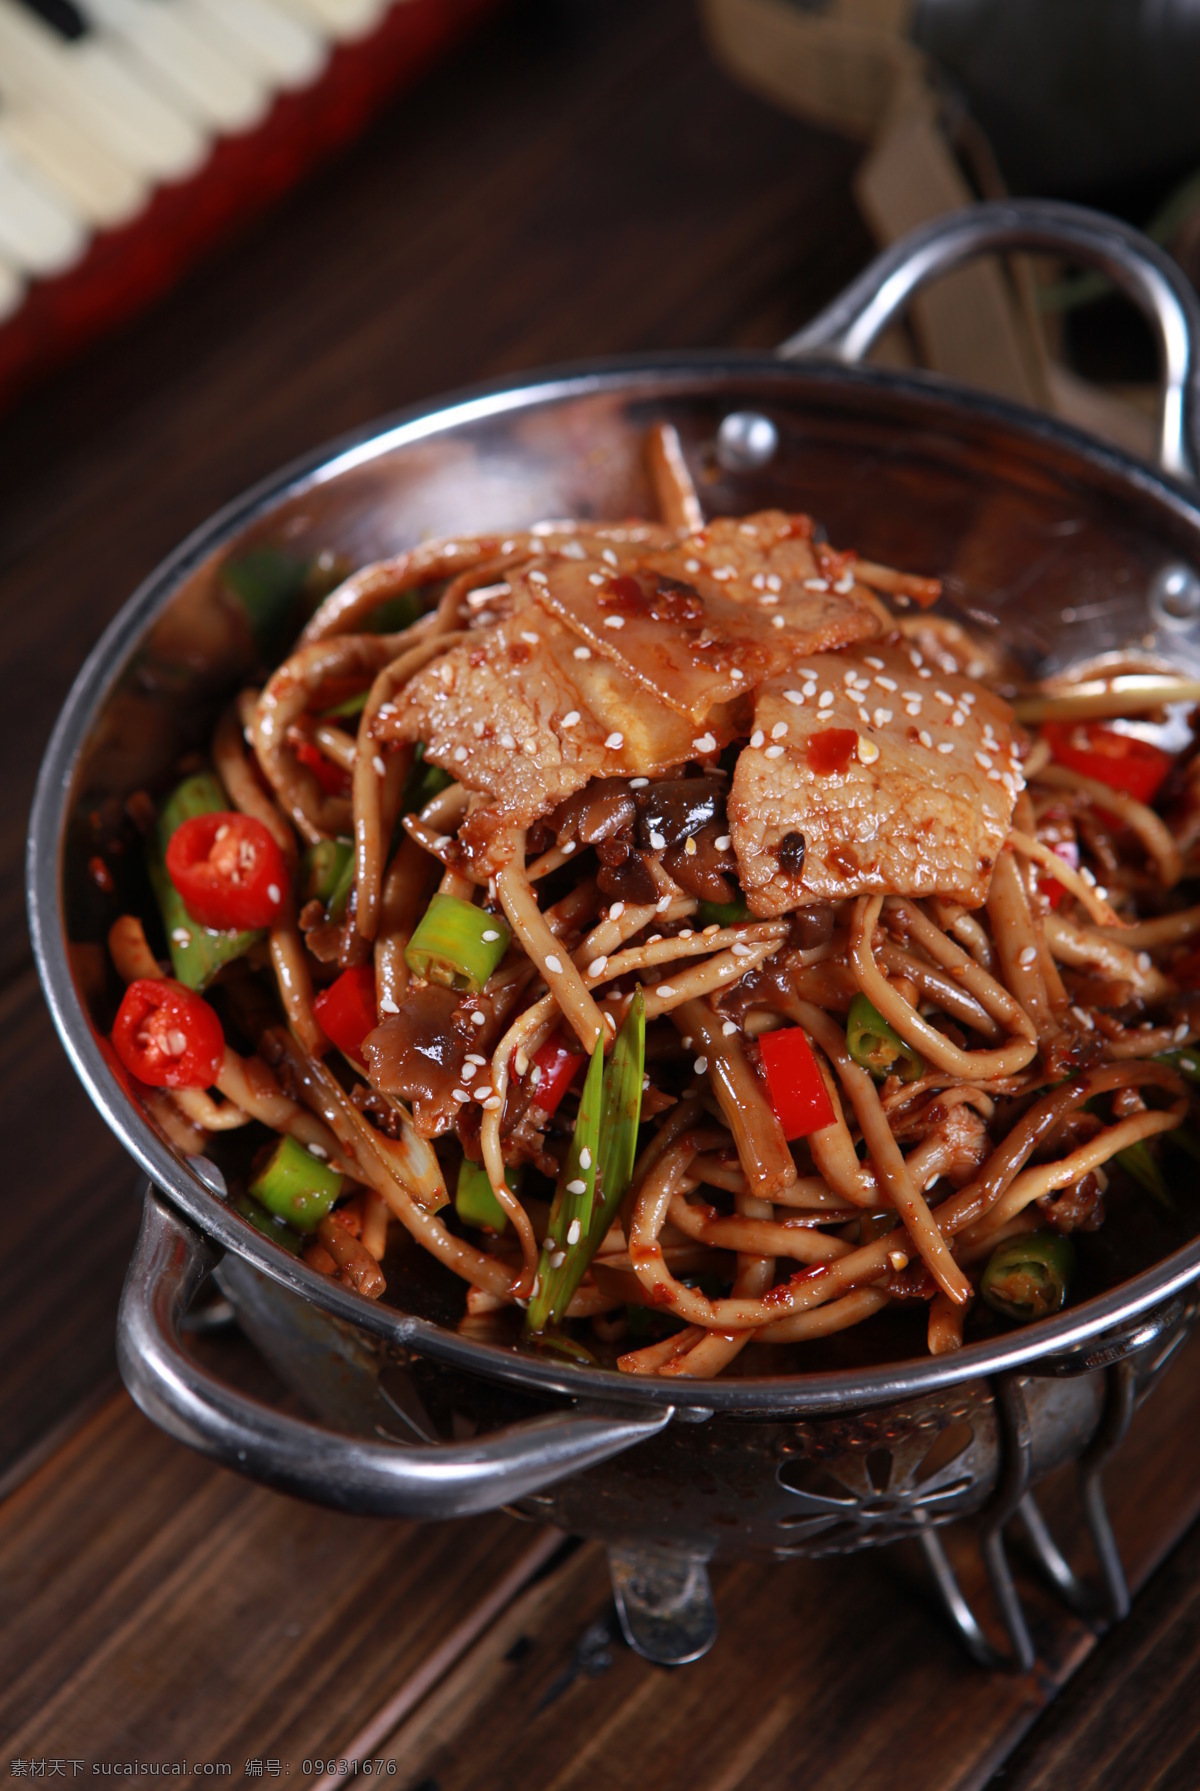 干锅茶树菇 中餐 美食 传统美食 菜图 干锅 茶树菇 菜图中餐 餐饮美食